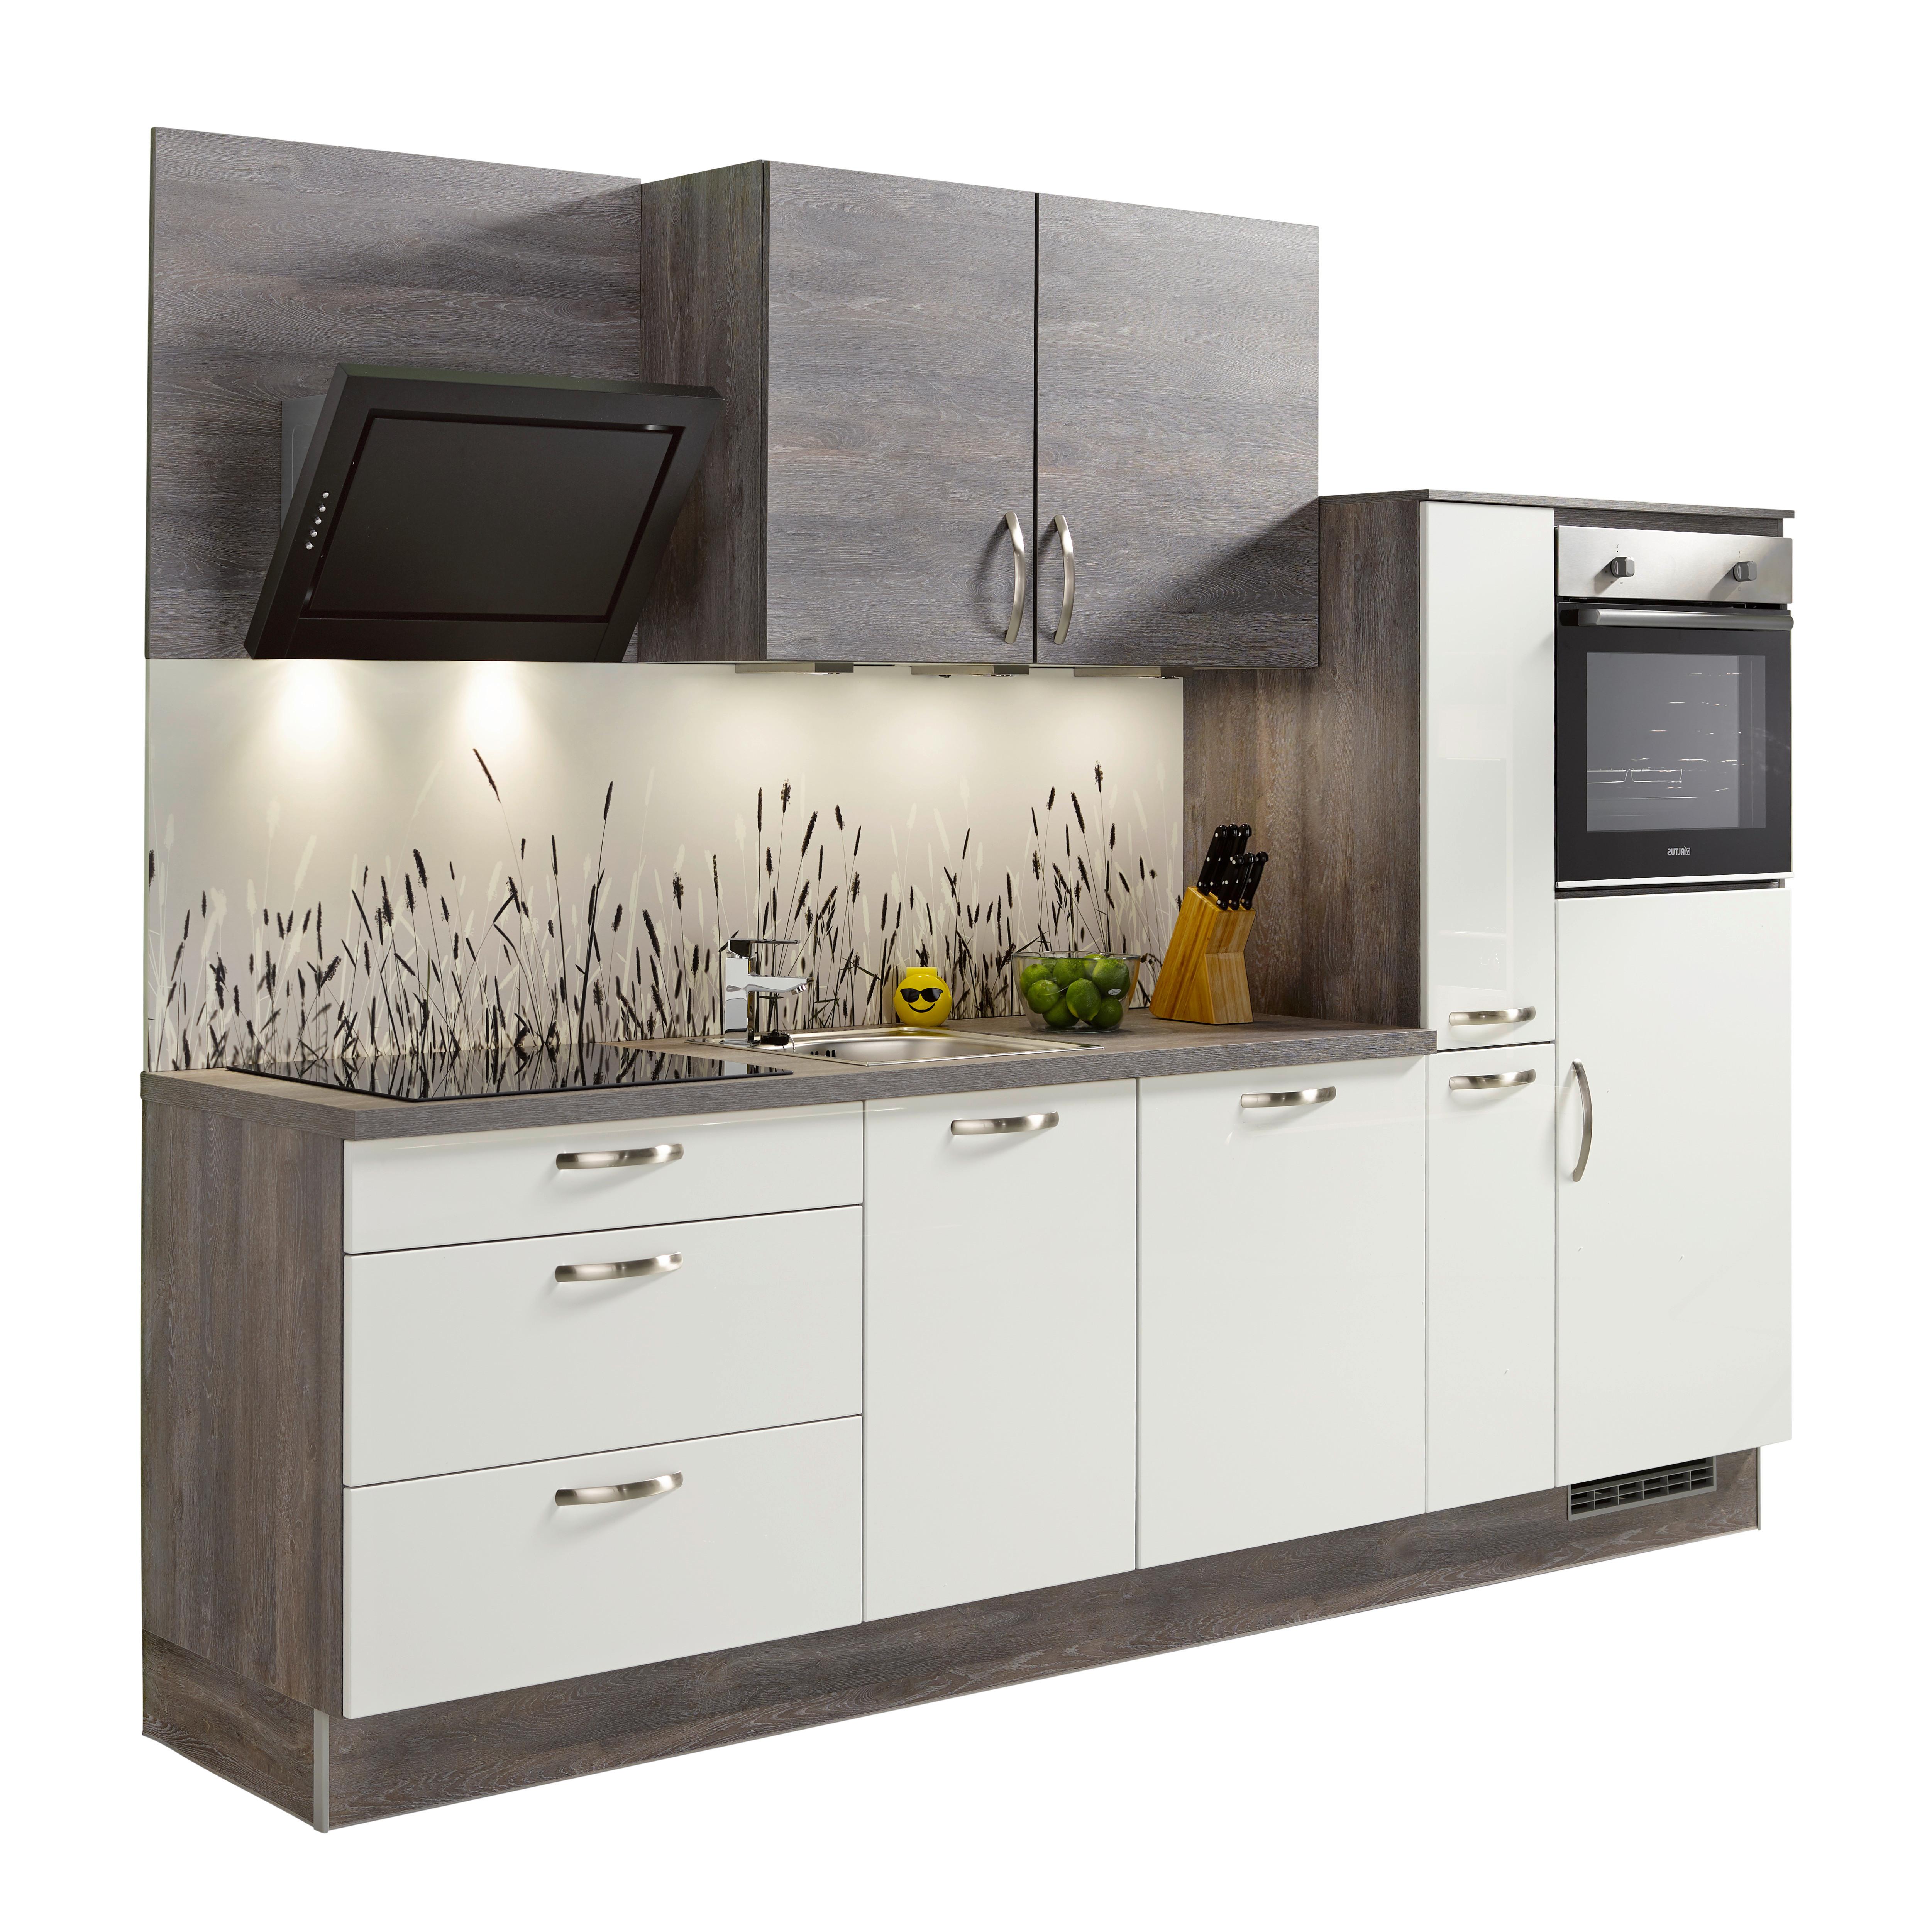 Küchenzeile Pn220/Pn100 mit Geräten 280 cm Weiß/Steingrau - Eichefarben/Weiß, MODERN, Holzwerkstoff (280cm) - Pino